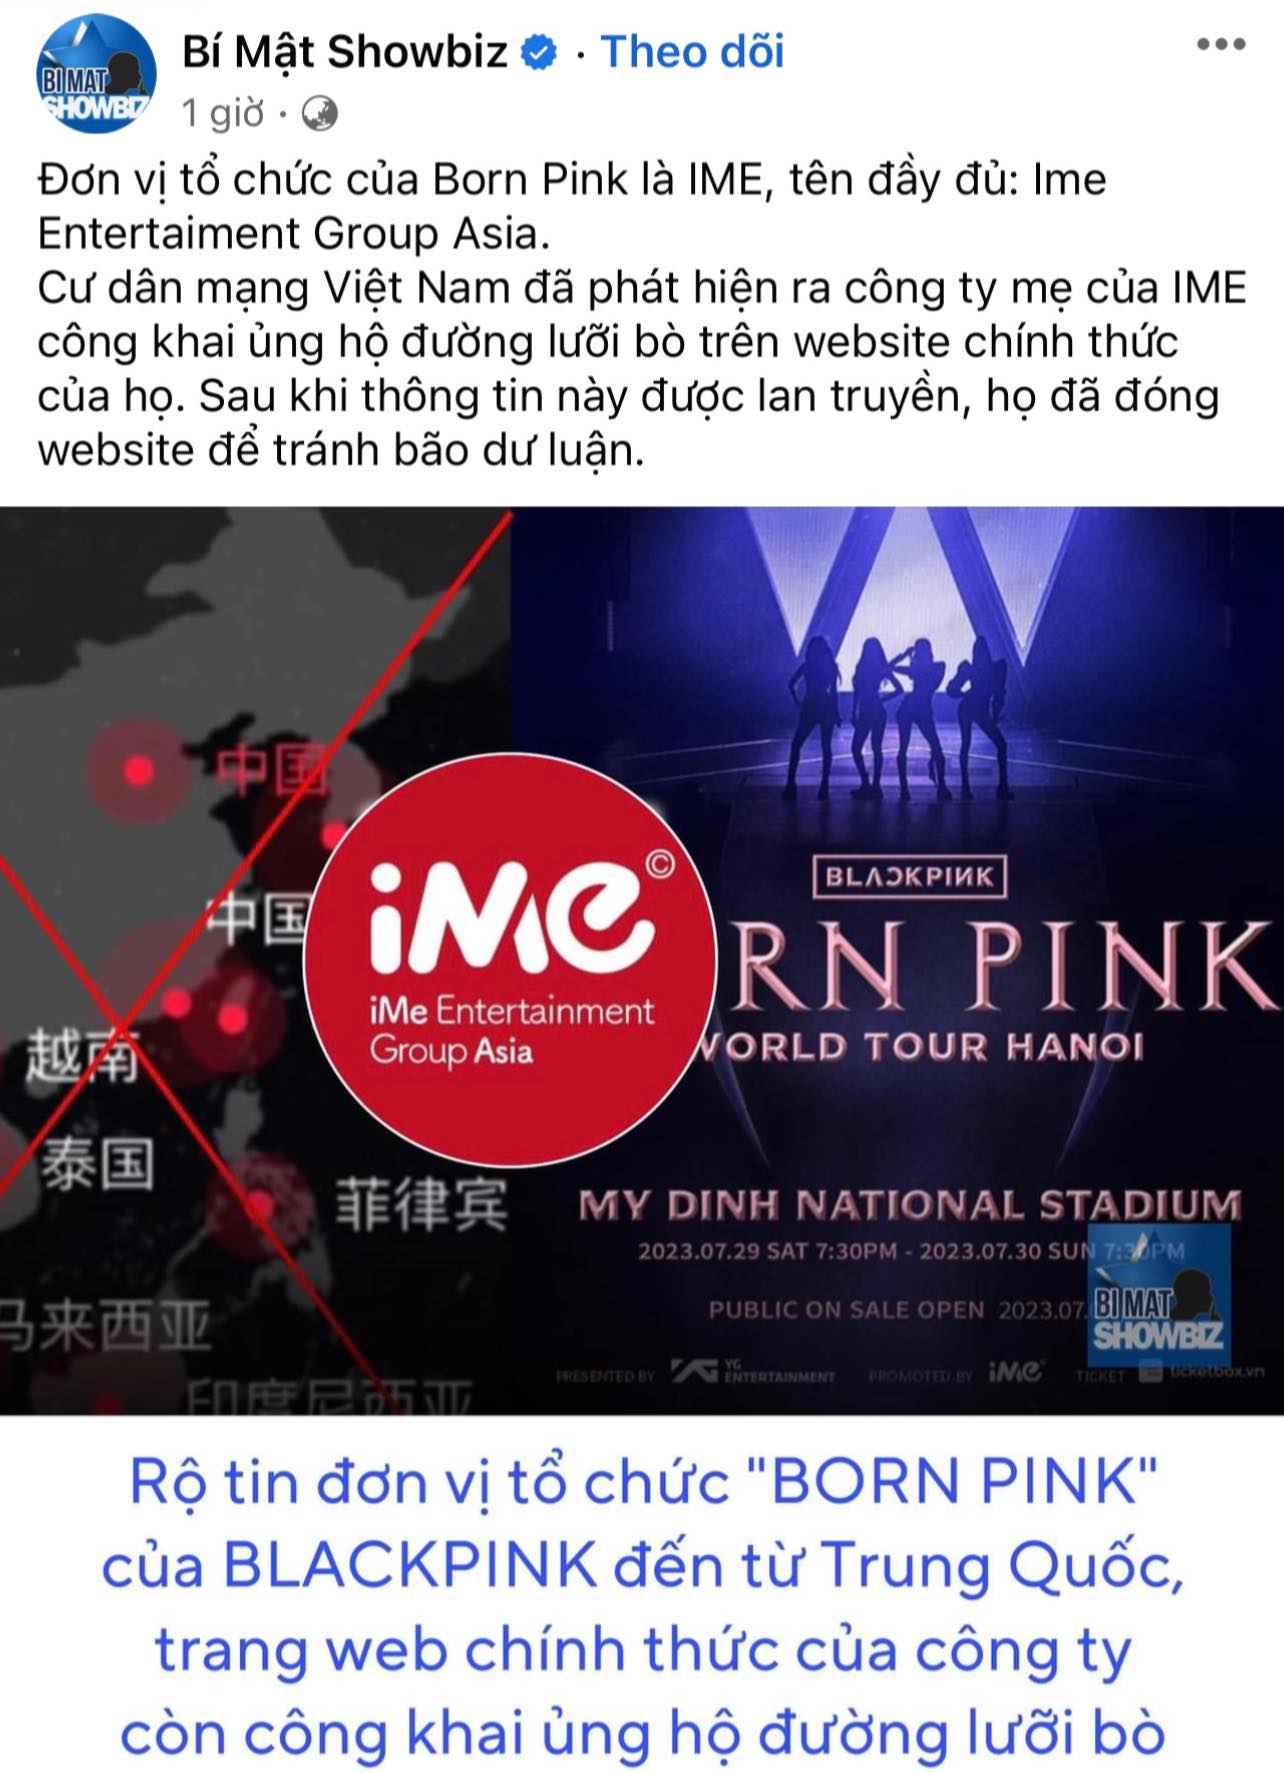 iMe Entertainment Group tổ chức concert BLACKPINK bị tẩy chay vì đăng bản đồ đường lưỡi bò. (Ảnh: Internet)